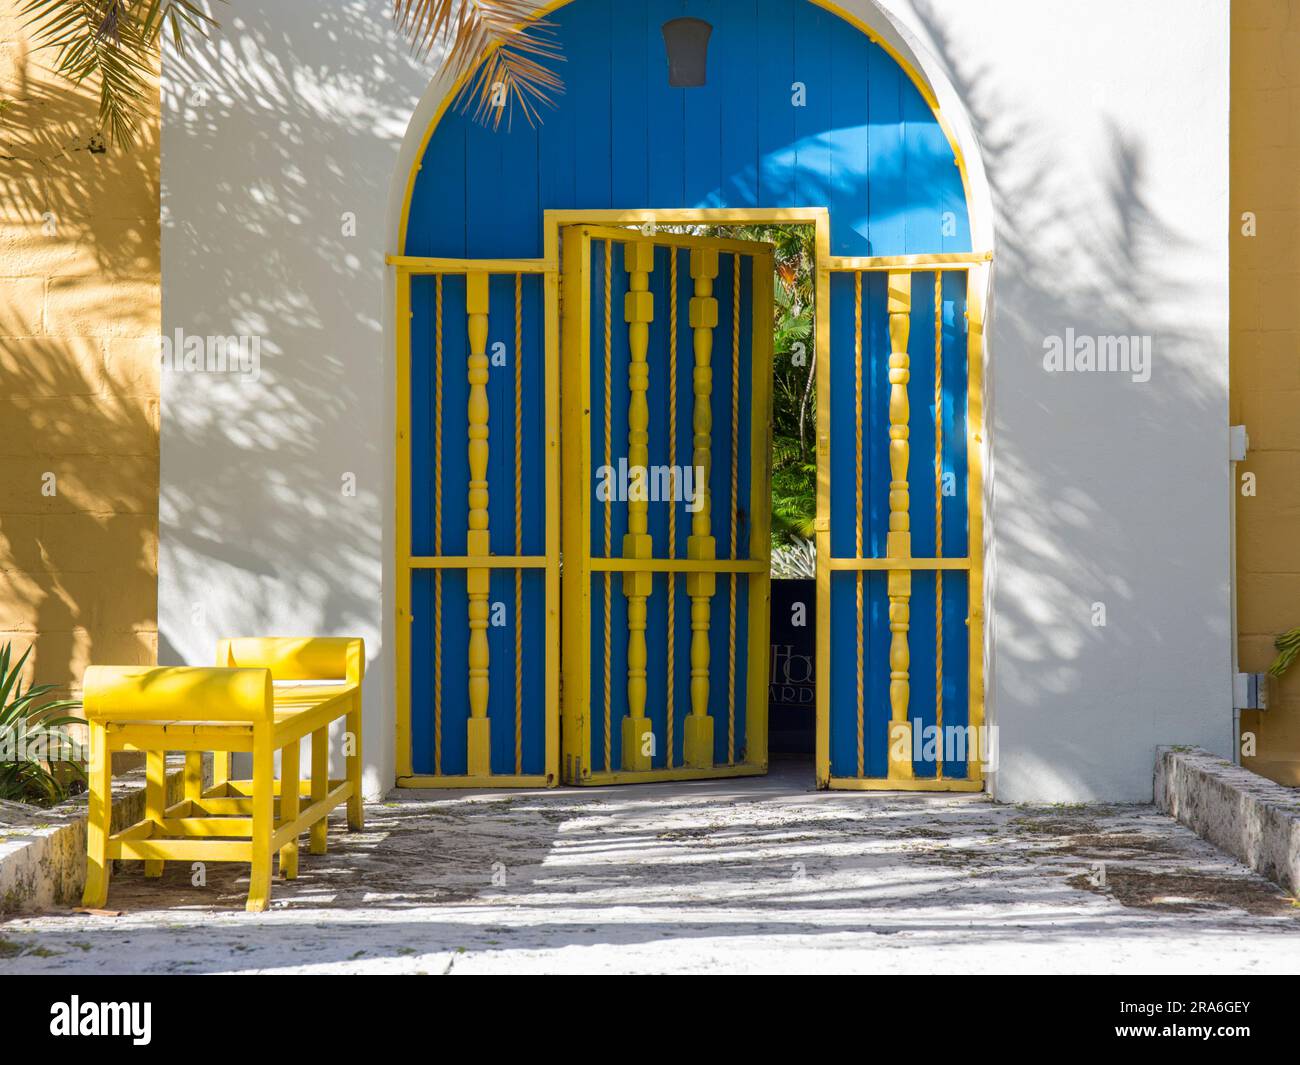 Fort Lauderdale, Floride, États-Unis. Porte colorée marquant l'entrée de l'historique Bonnet House Museum and Gardens, alias The Bartlett Estate. Banque D'Images